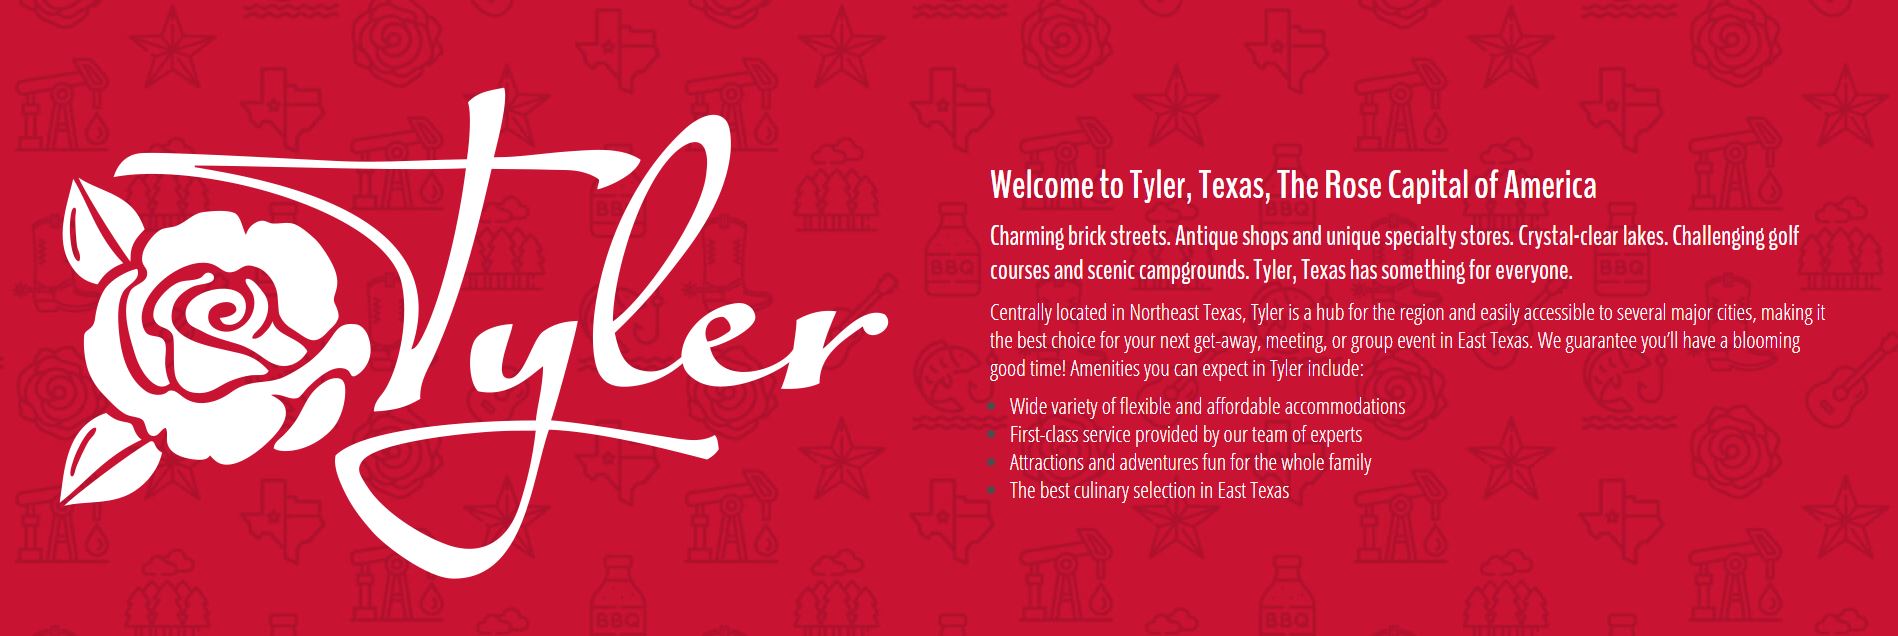 Tyler Texas Activities